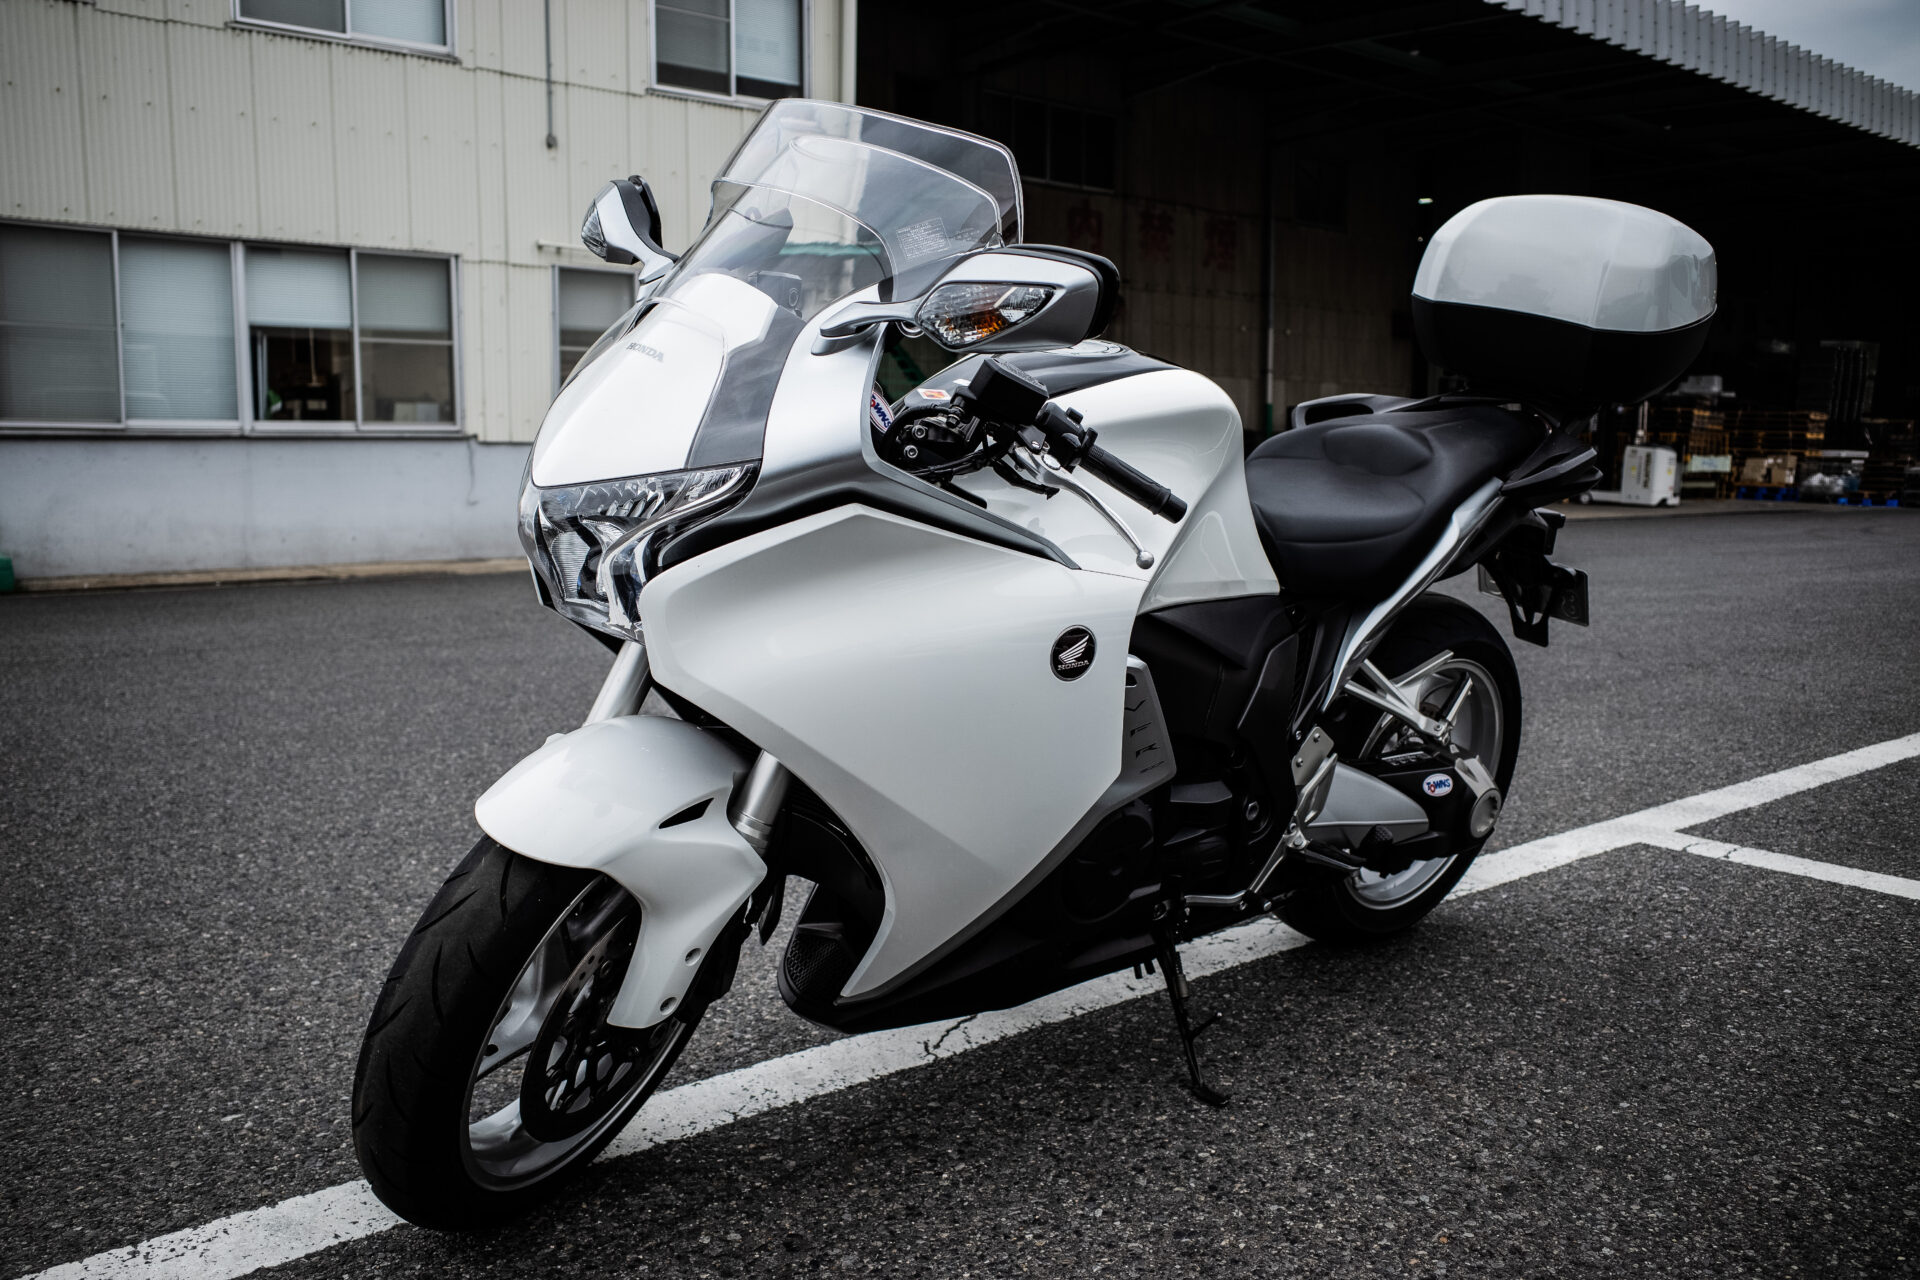 【バイク納車】ついにバイク納車「ホンダ VFR1200F」